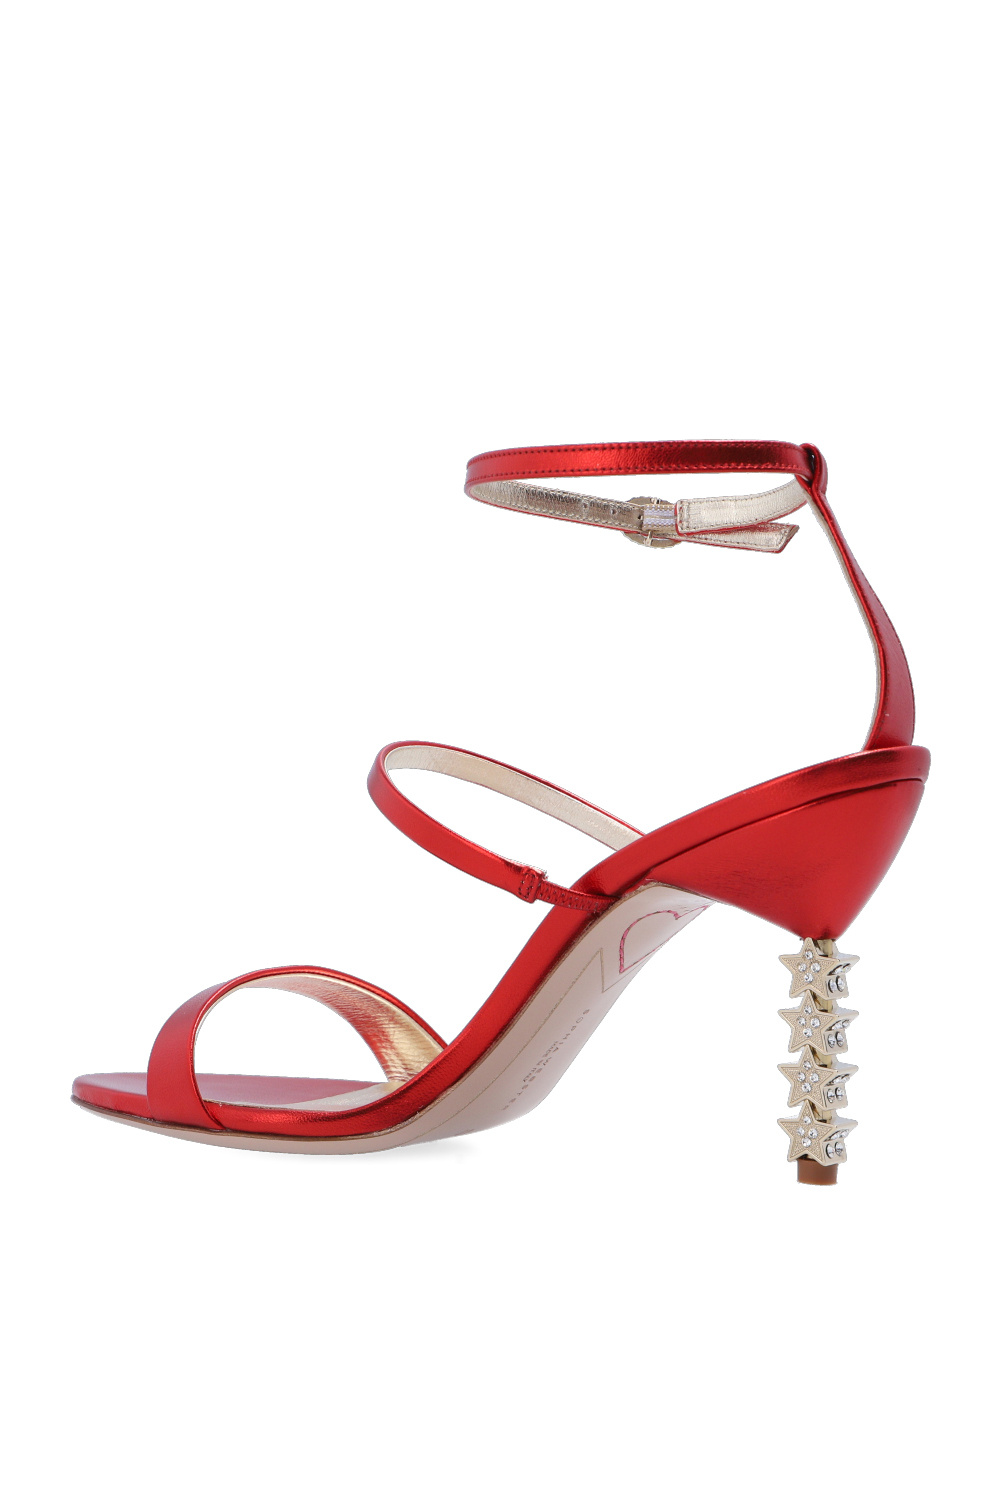 Sophia Webster ‘Rosalind’ heeled Black sandals